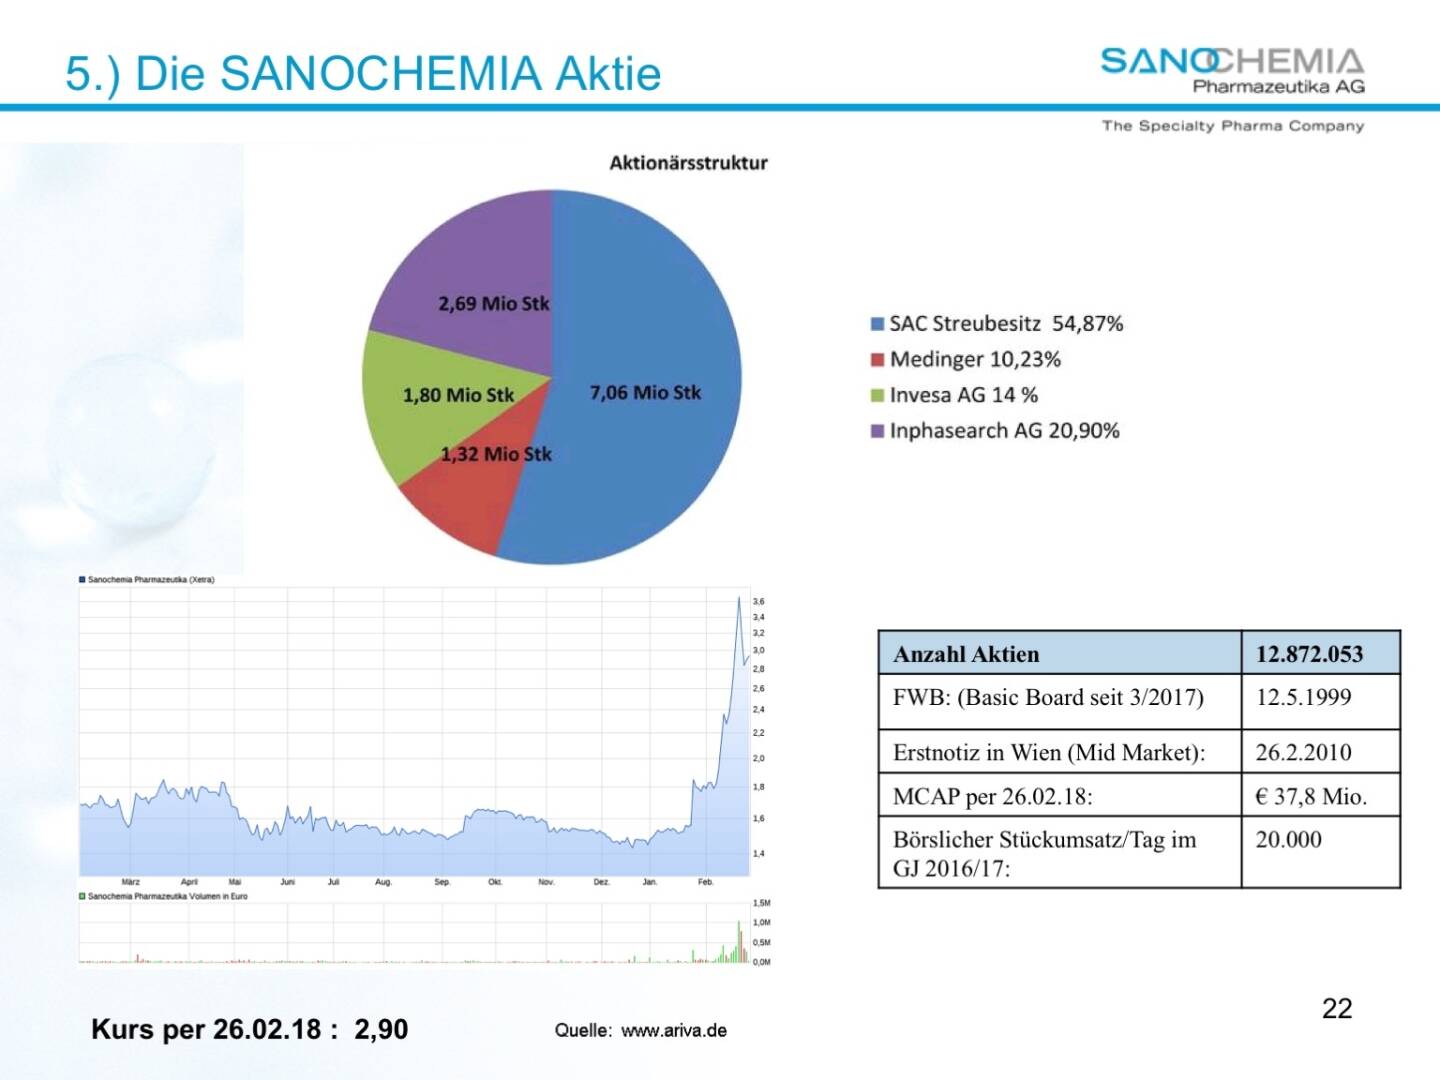 Präsentation Sanochemia - die Aktie